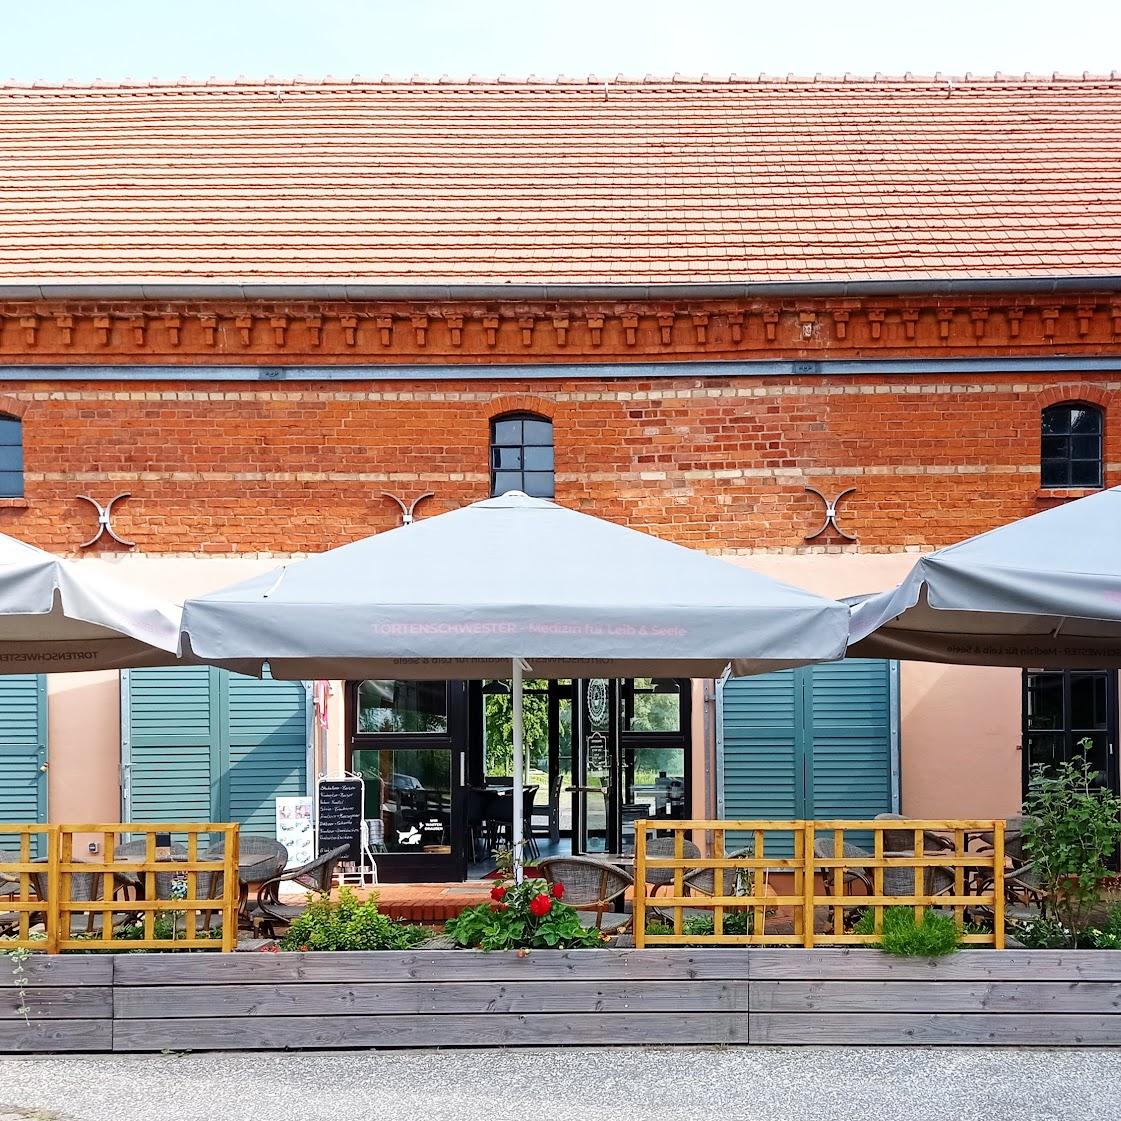 Restaurant "Tortenschwester - Café & Laden" in Wittstock-Dosse